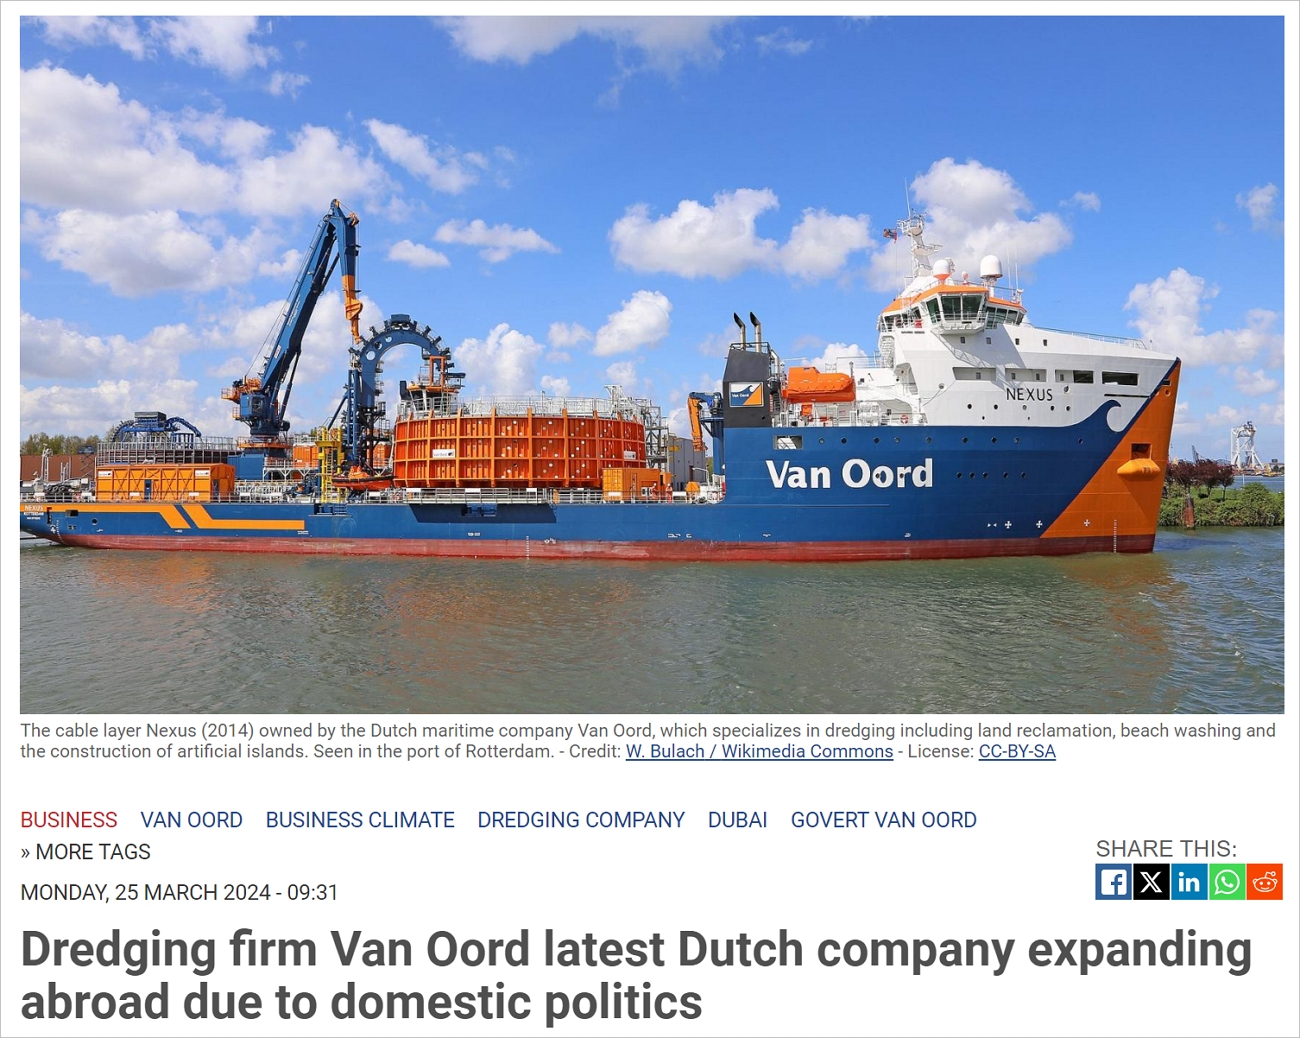 又一荷兰大公司宣布将向海外扩张，长远考虑将在迪拜开分公司